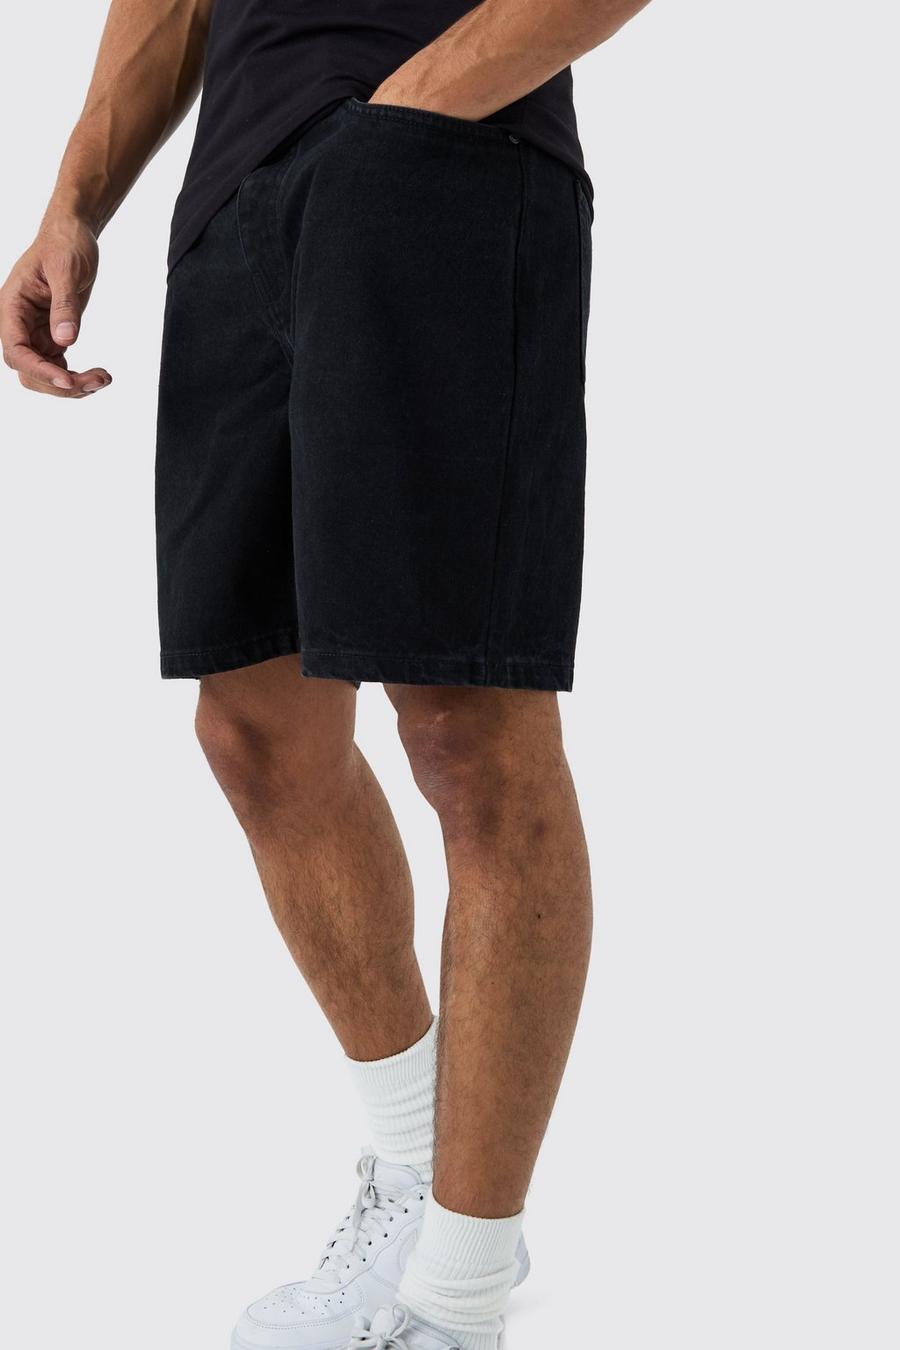 Pantalones cortos vaqueros holgados sin tratar en negro, True black image number 1